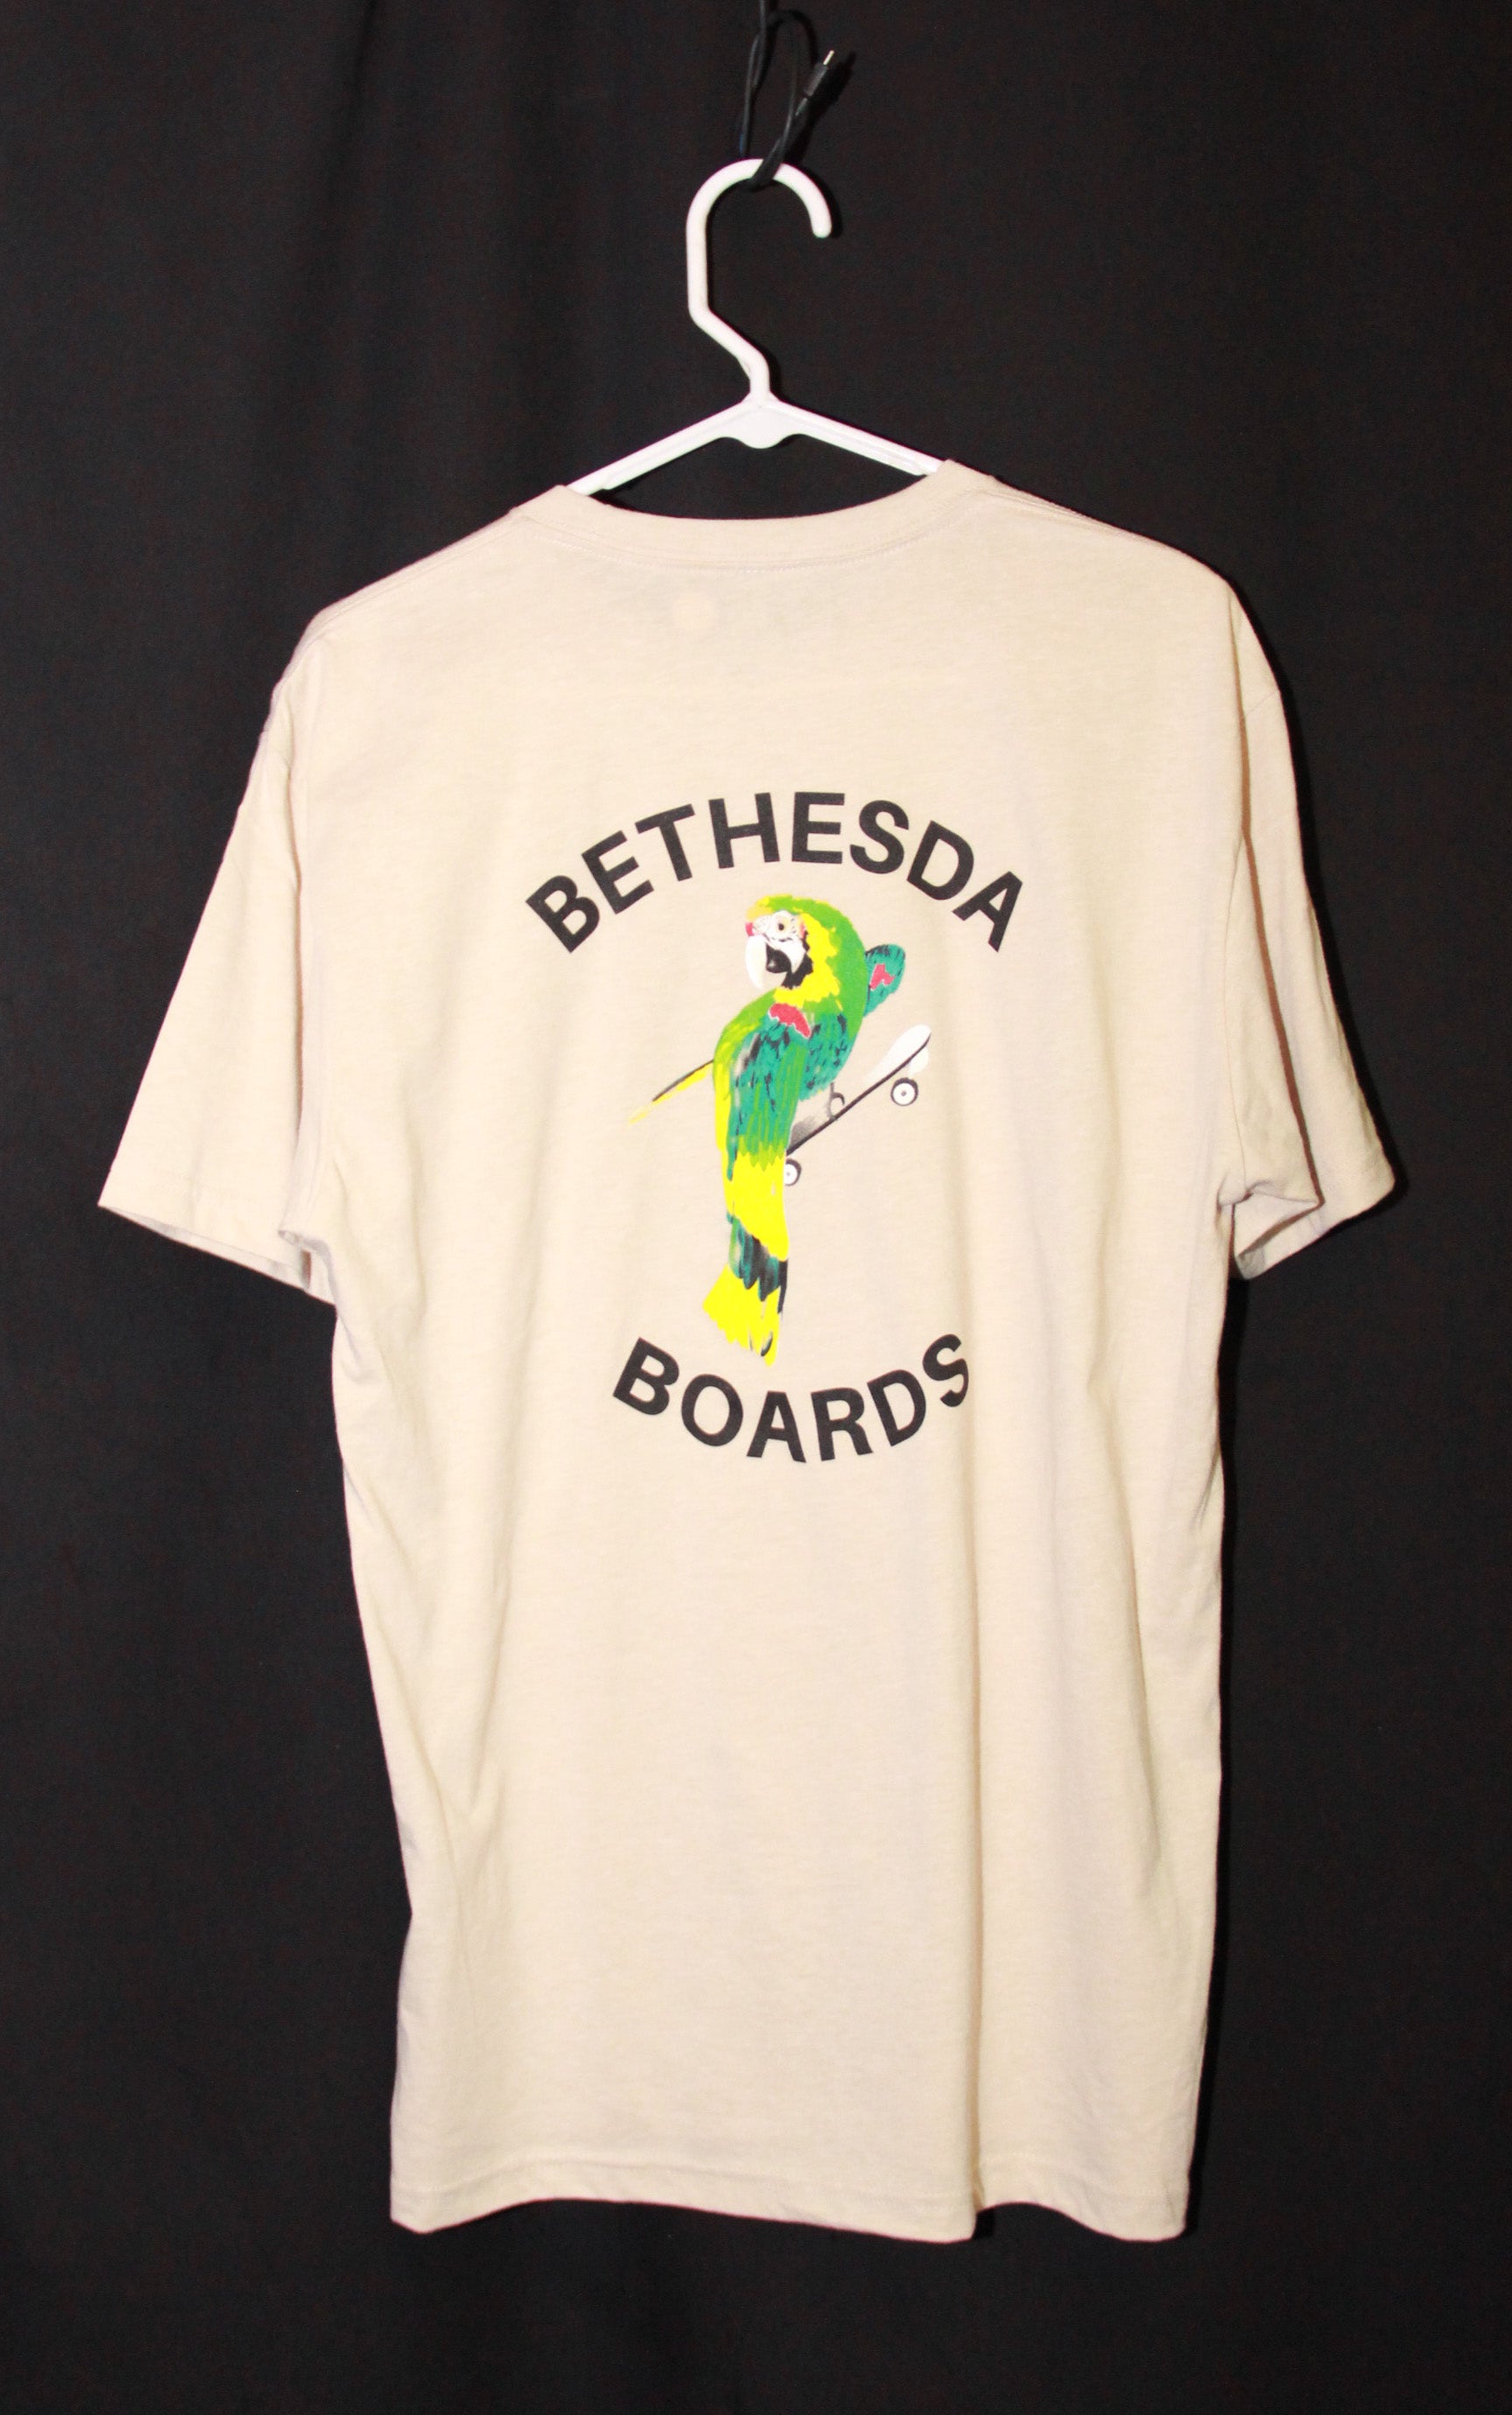 Bethesda Board Next Level (White Logo) Shirts